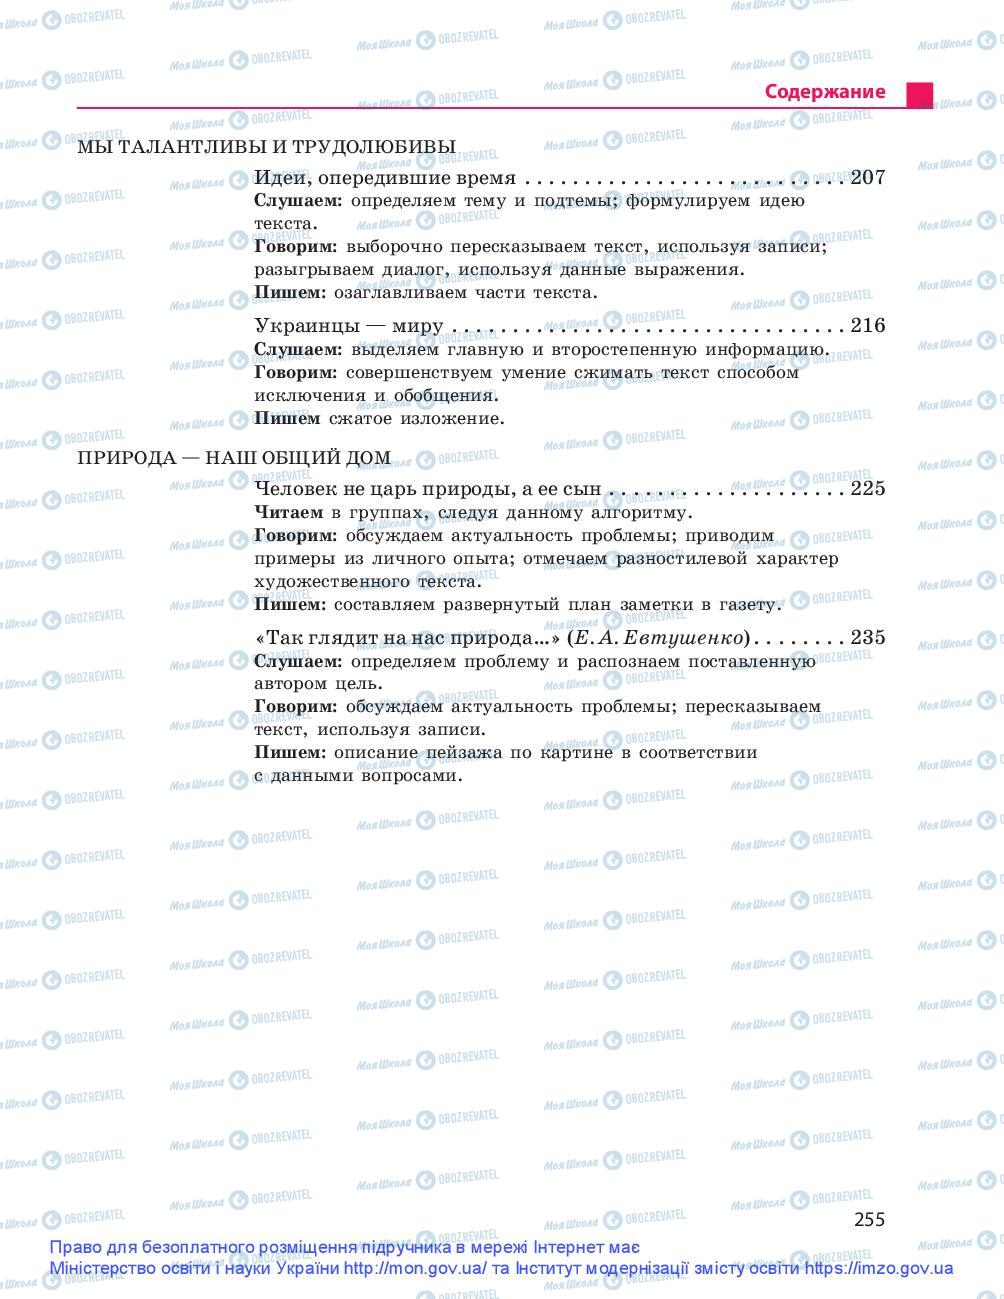 Учебники Русский язык 9 класс страница 255